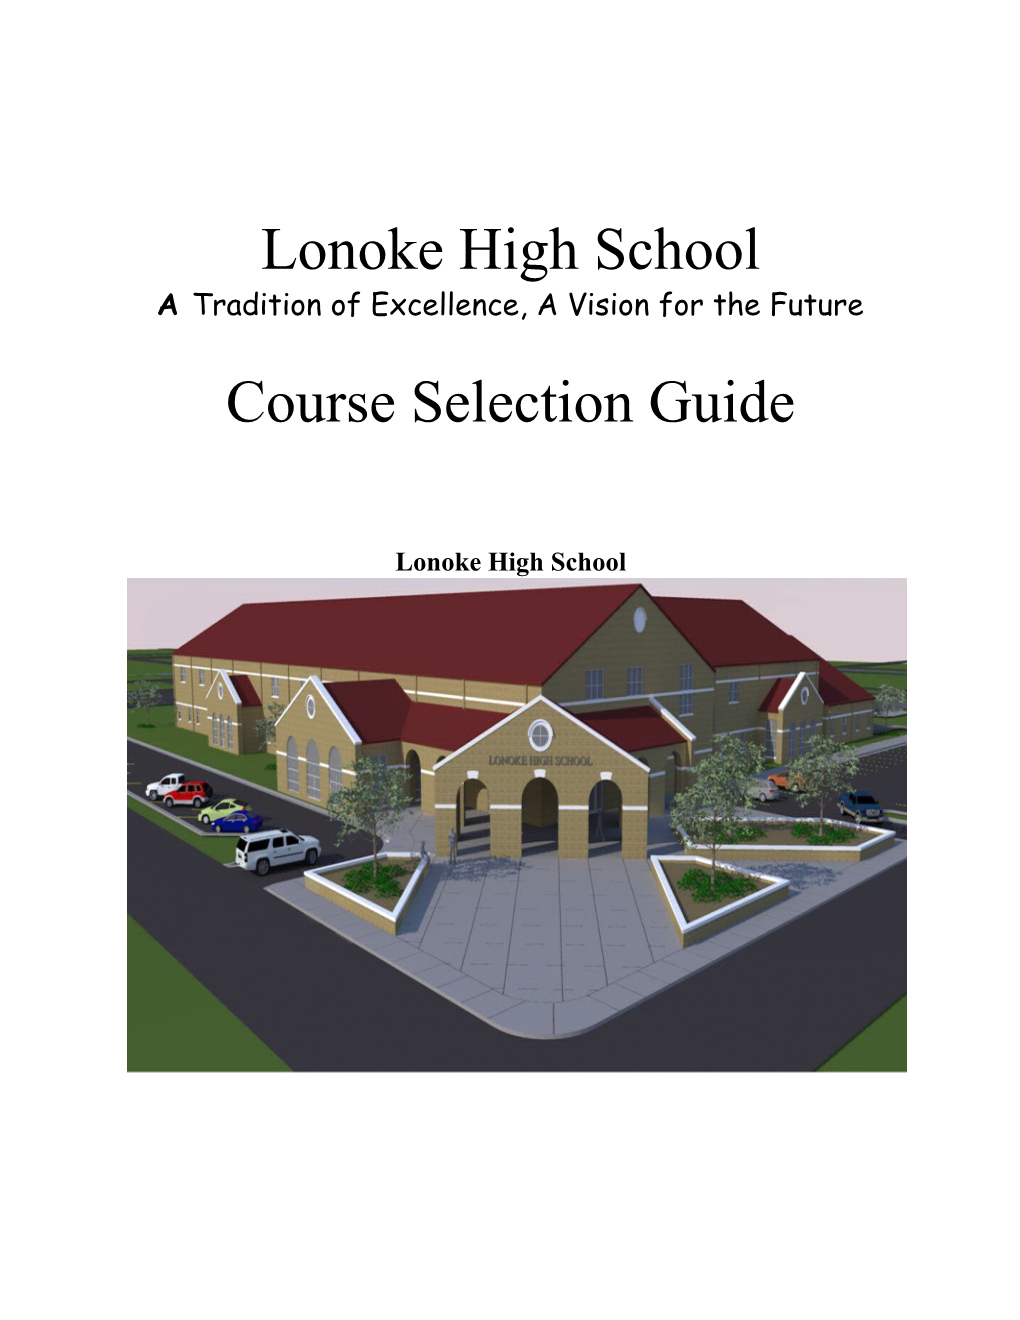 Lonoke High School